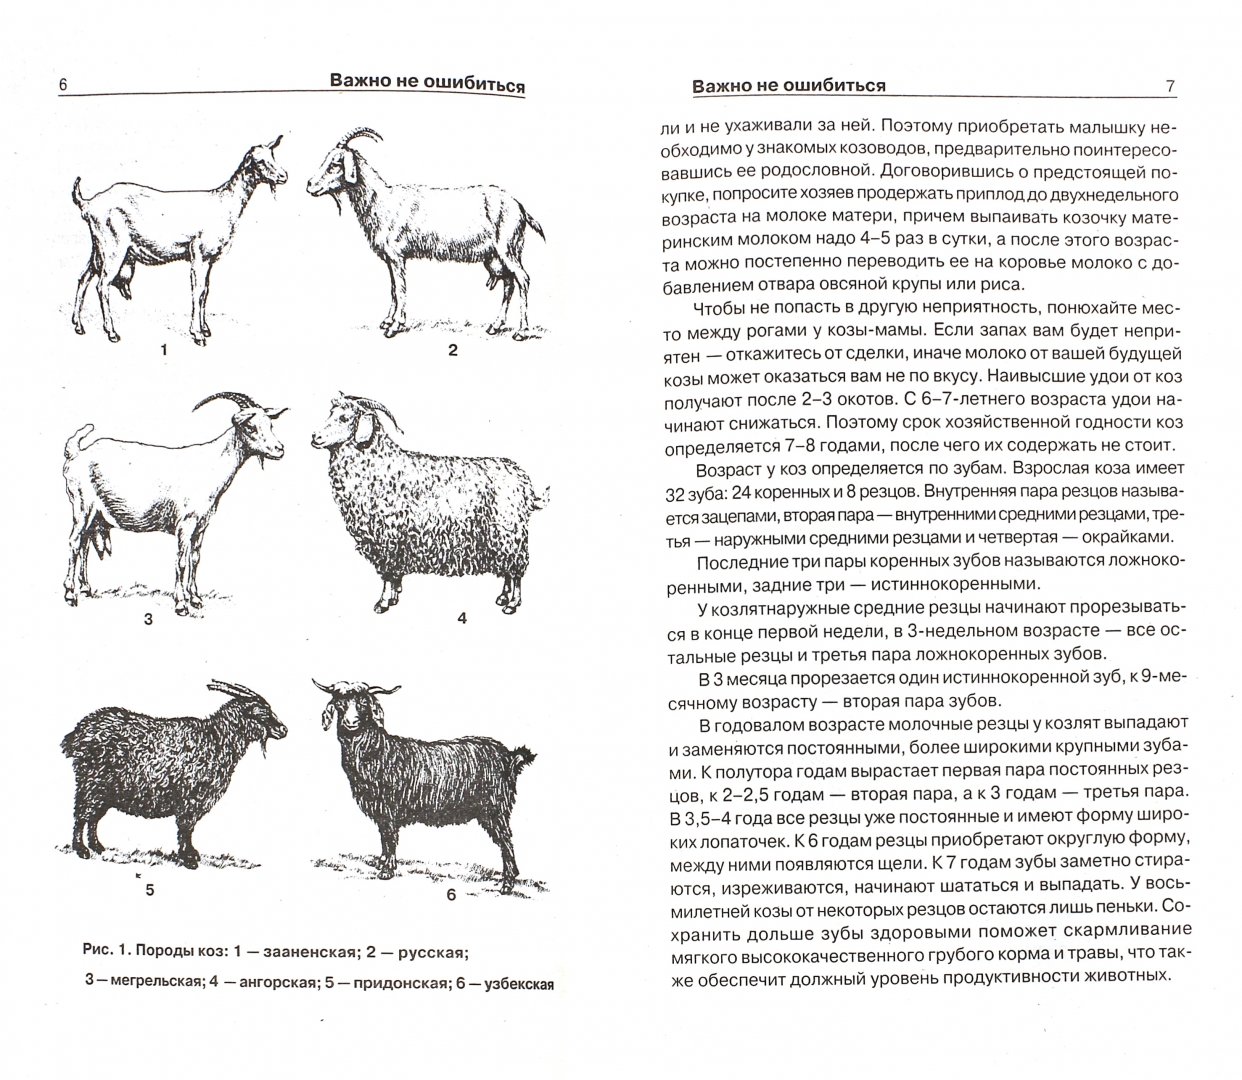 Как изменится численность мышей и коз. Таблица веса коз. Как определить Возраст козлят. Как узнать Возраст козлят. Породы коз схема.